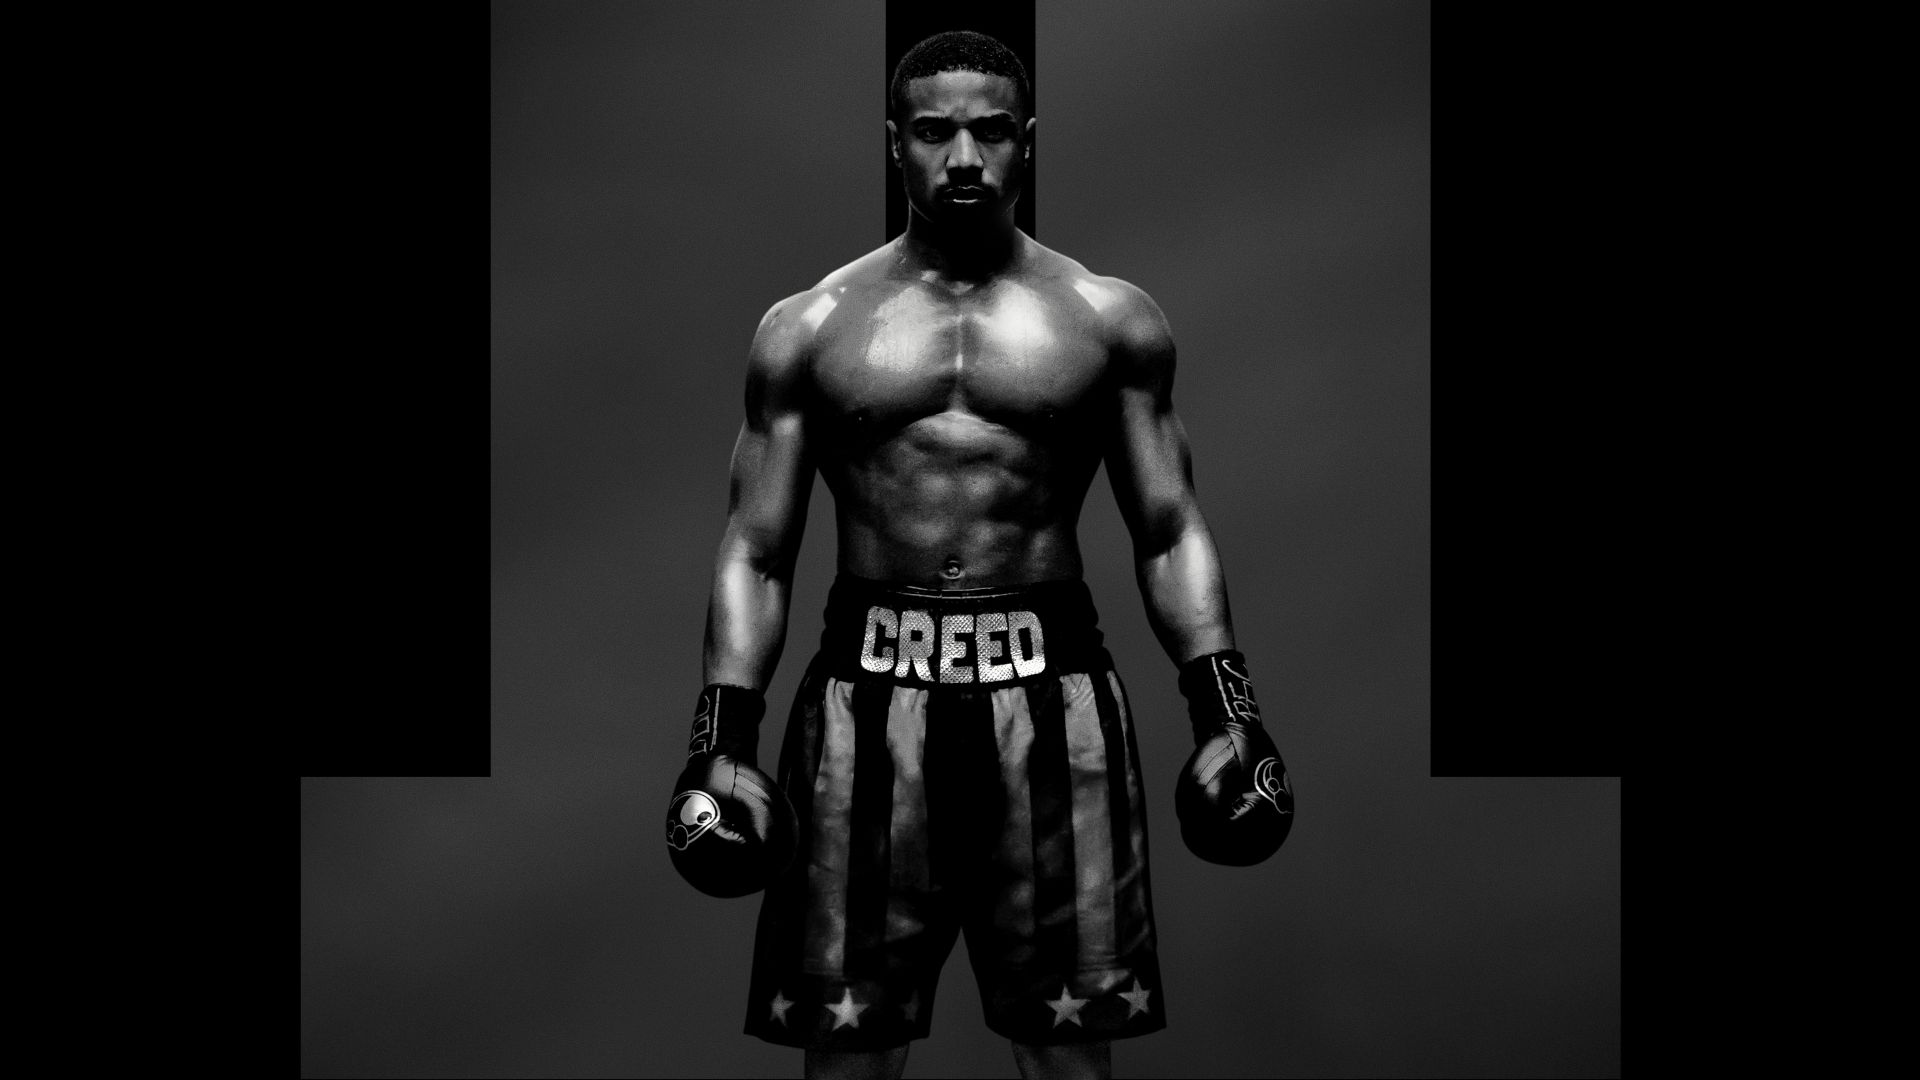 Creed 2, Adonis Johnson, poster, 7K (horizontal)